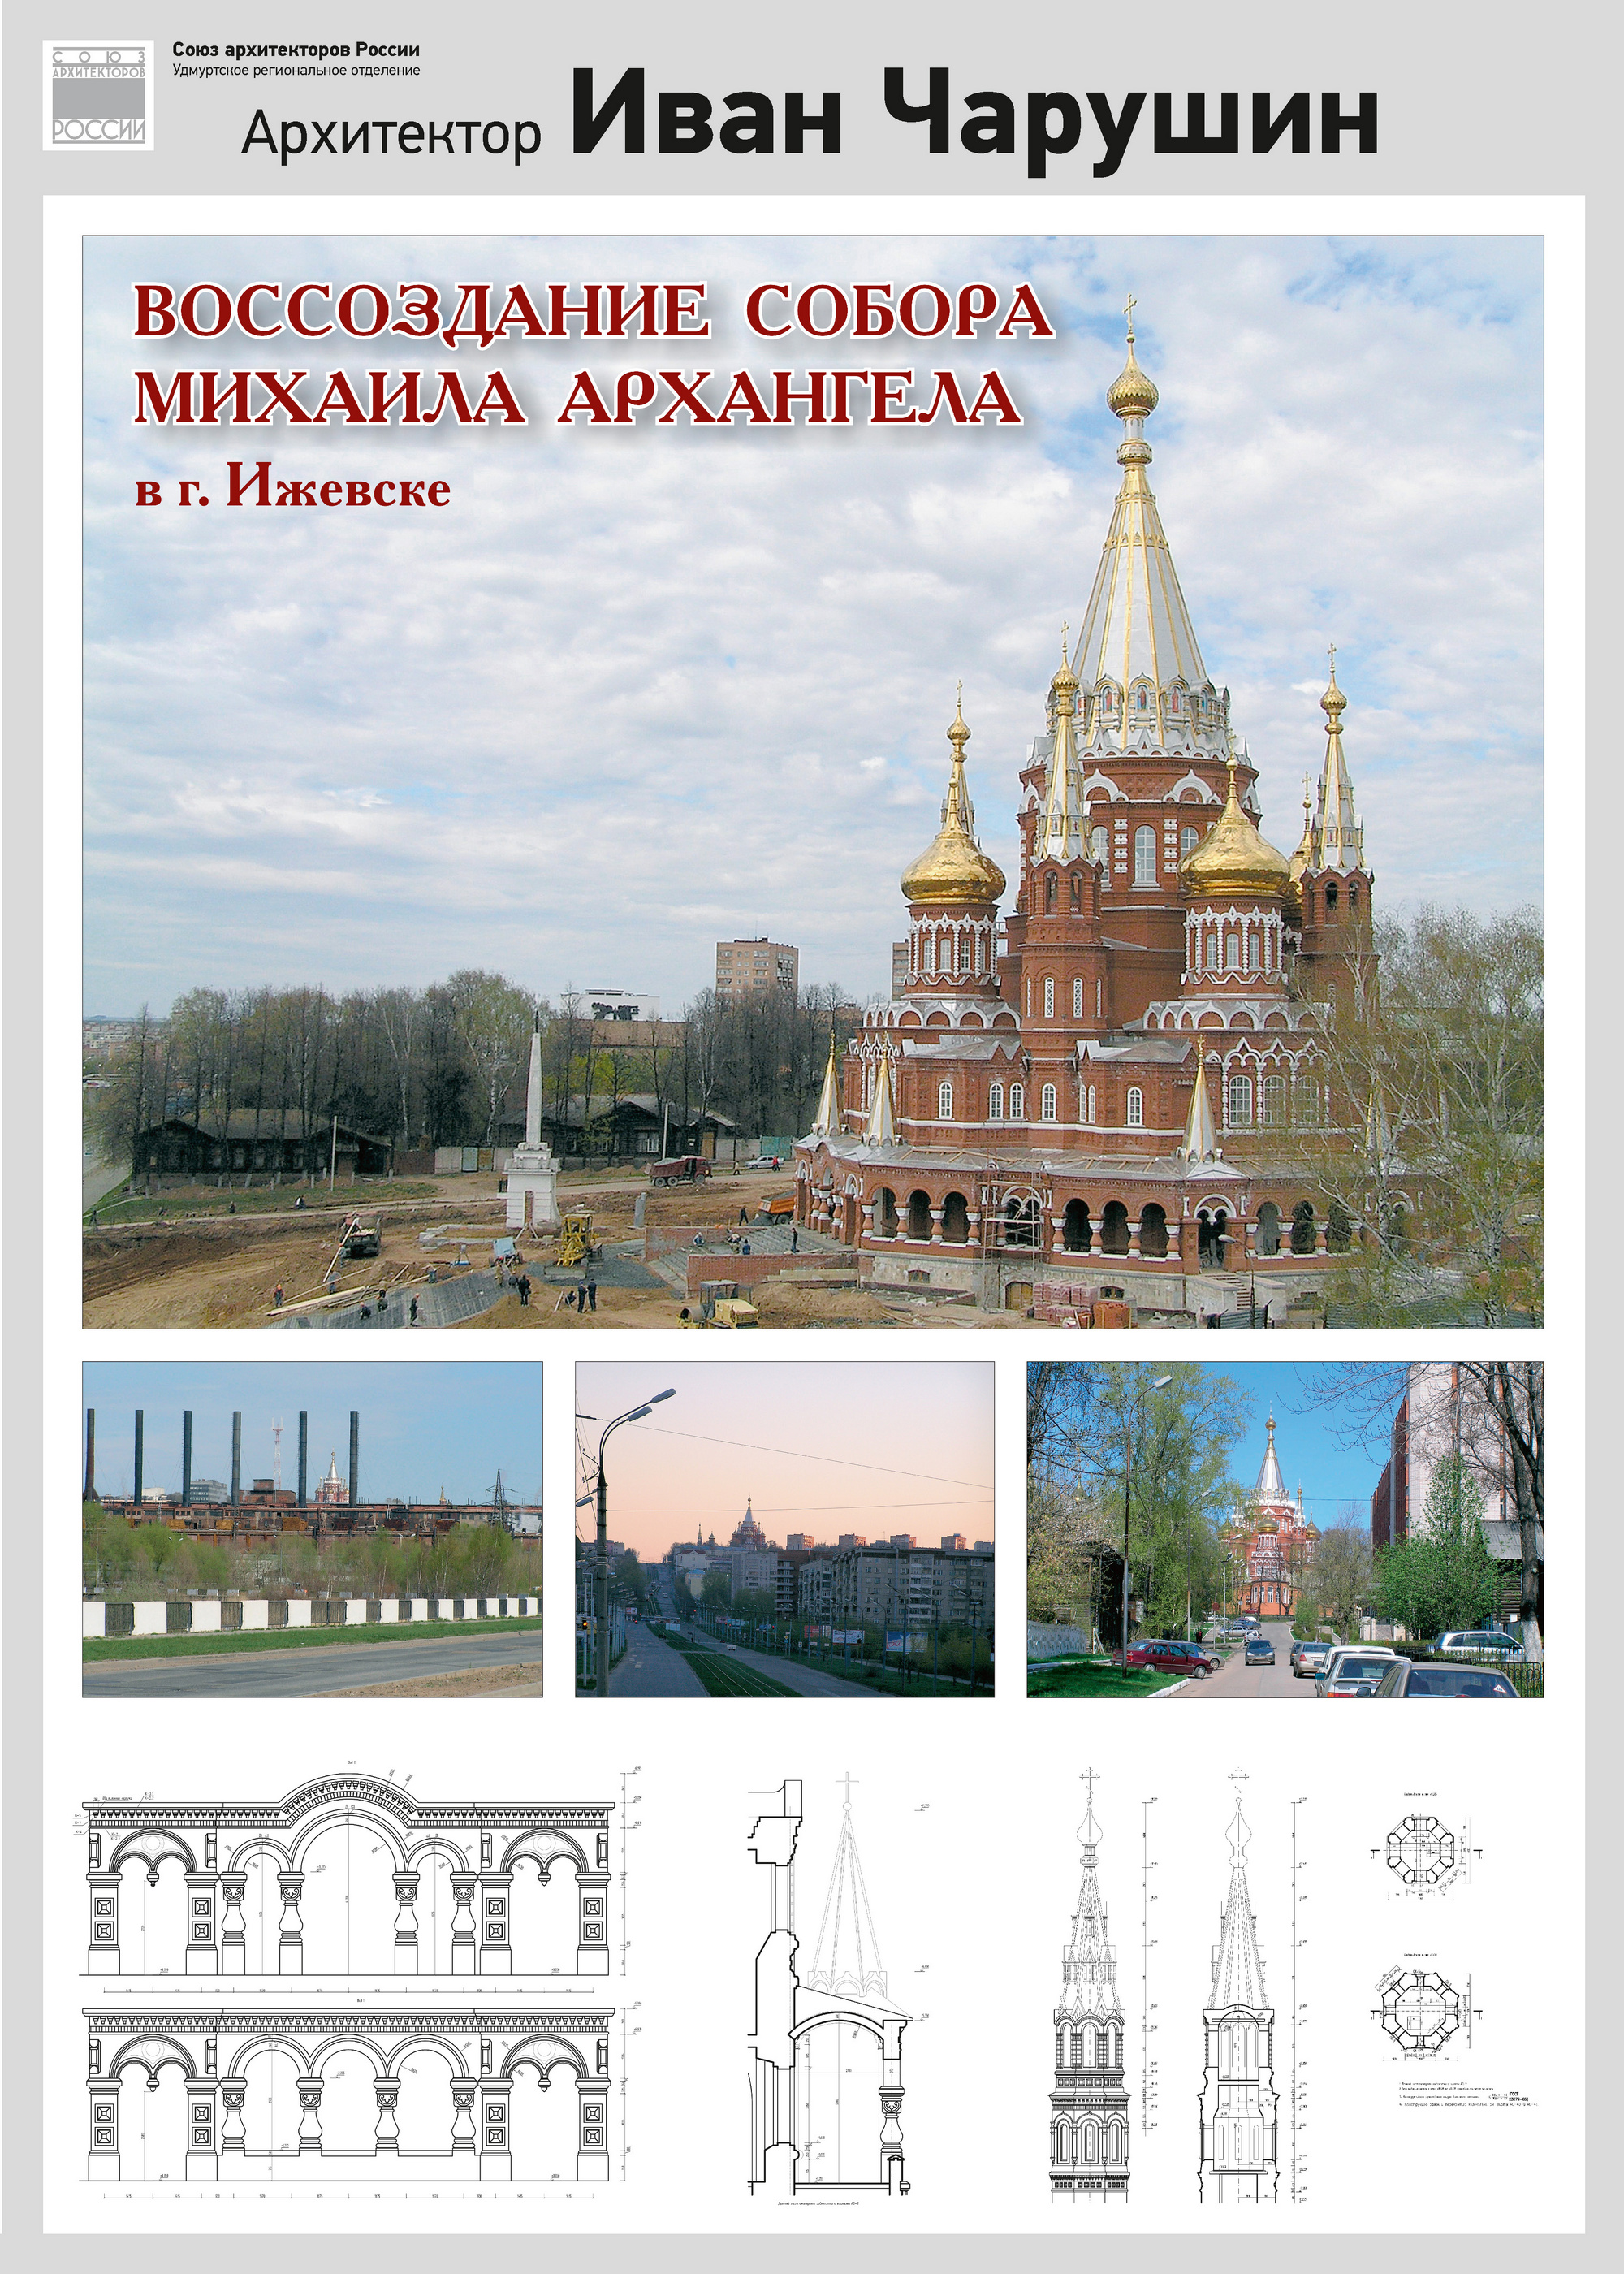 Воссоздание собора Михаила Архангела в Ижевске